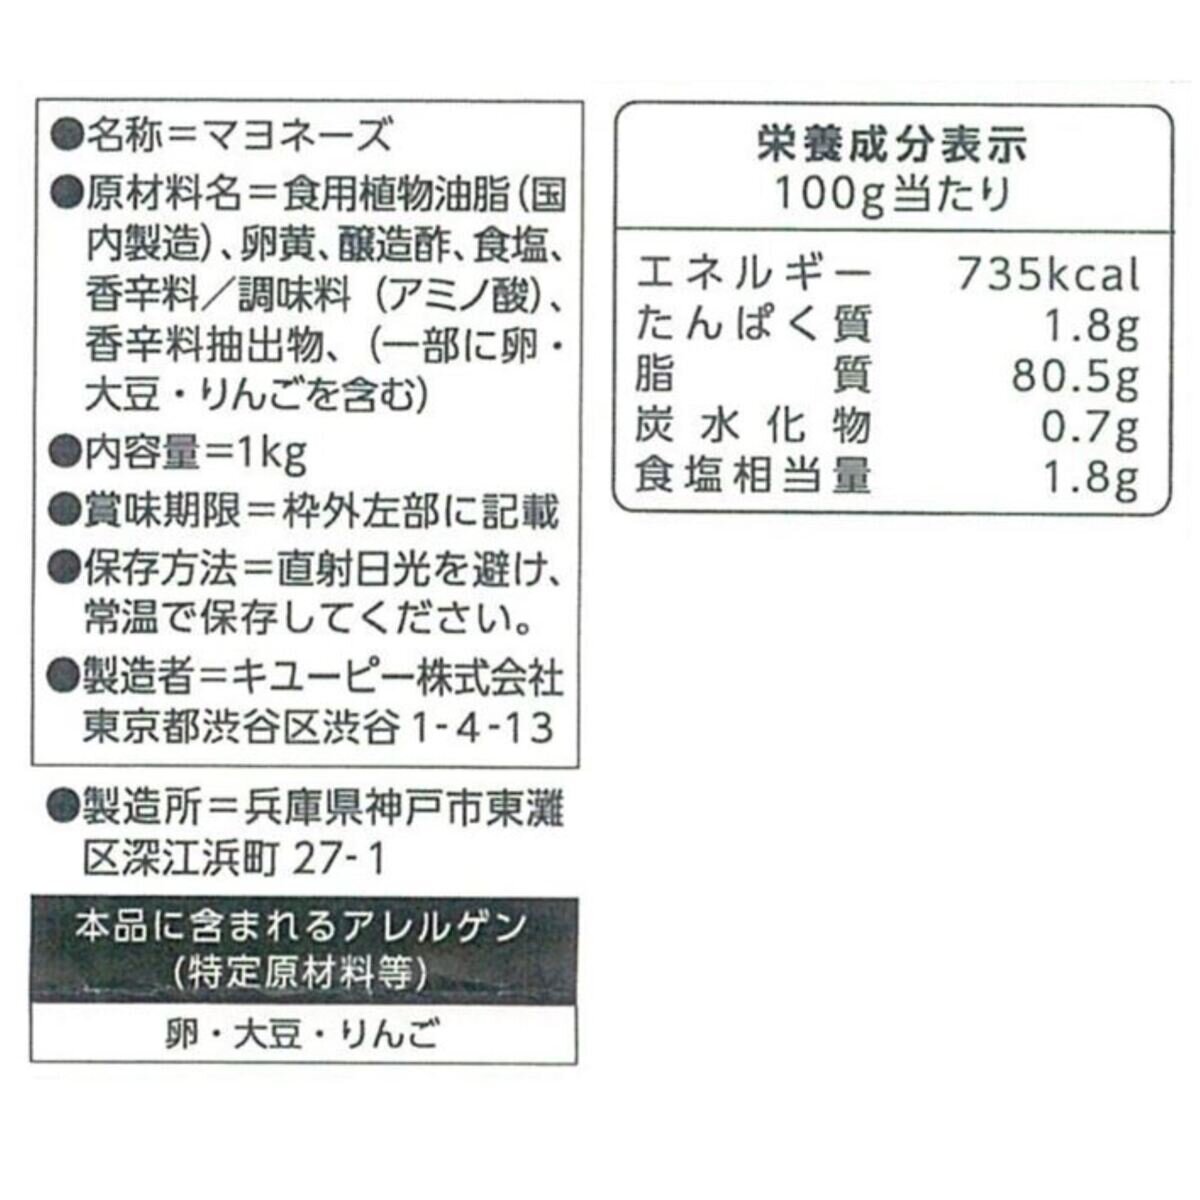 Japan　キユーピー　Costco　業務用マヨネーズ　1kg